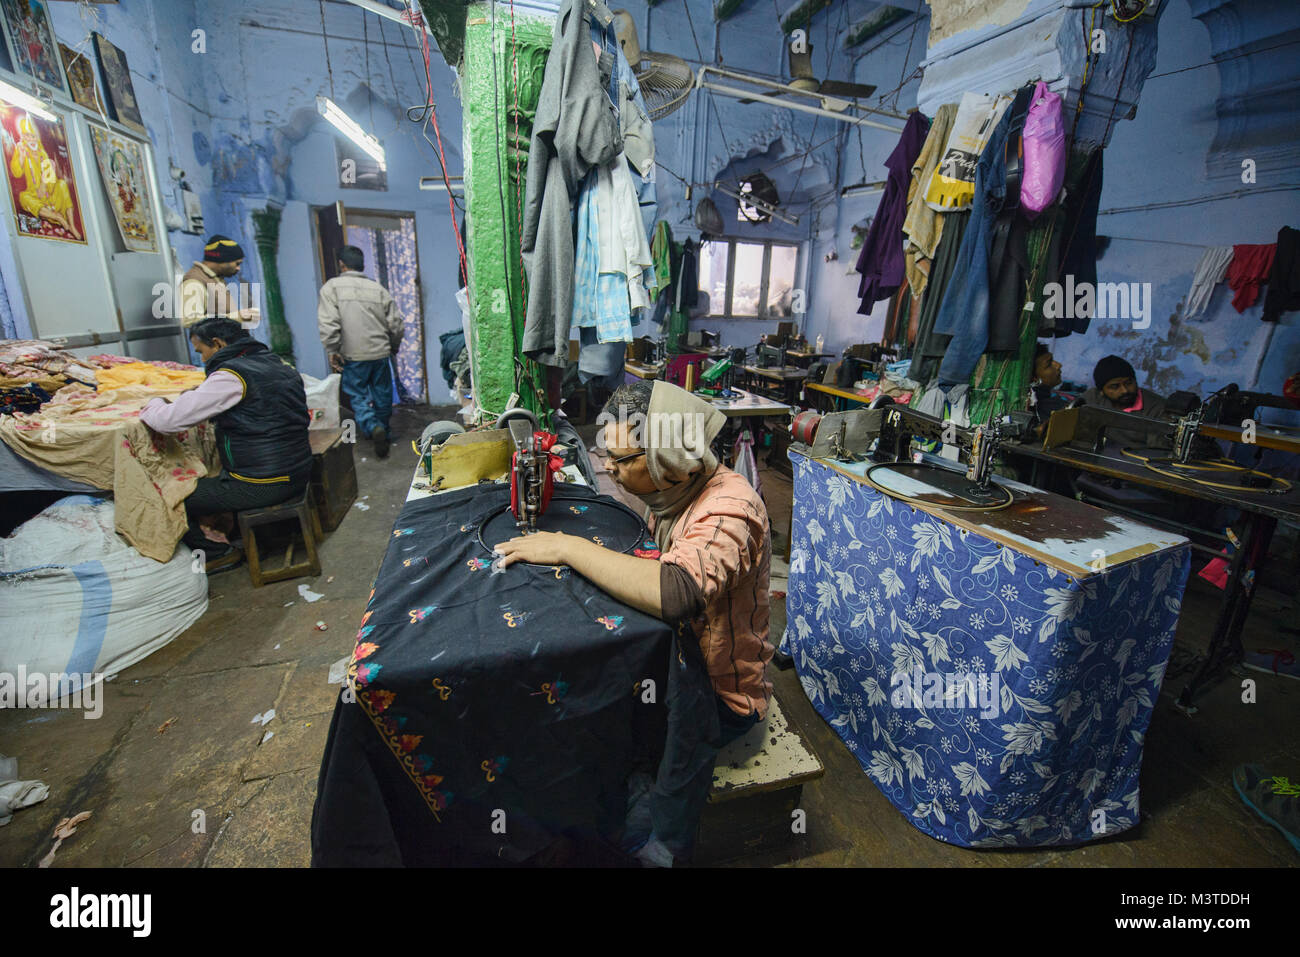 Stitcher d'experts au travail dans une usine de vêtements dans la vieille ville de Delhi, Inde Banque D'Images